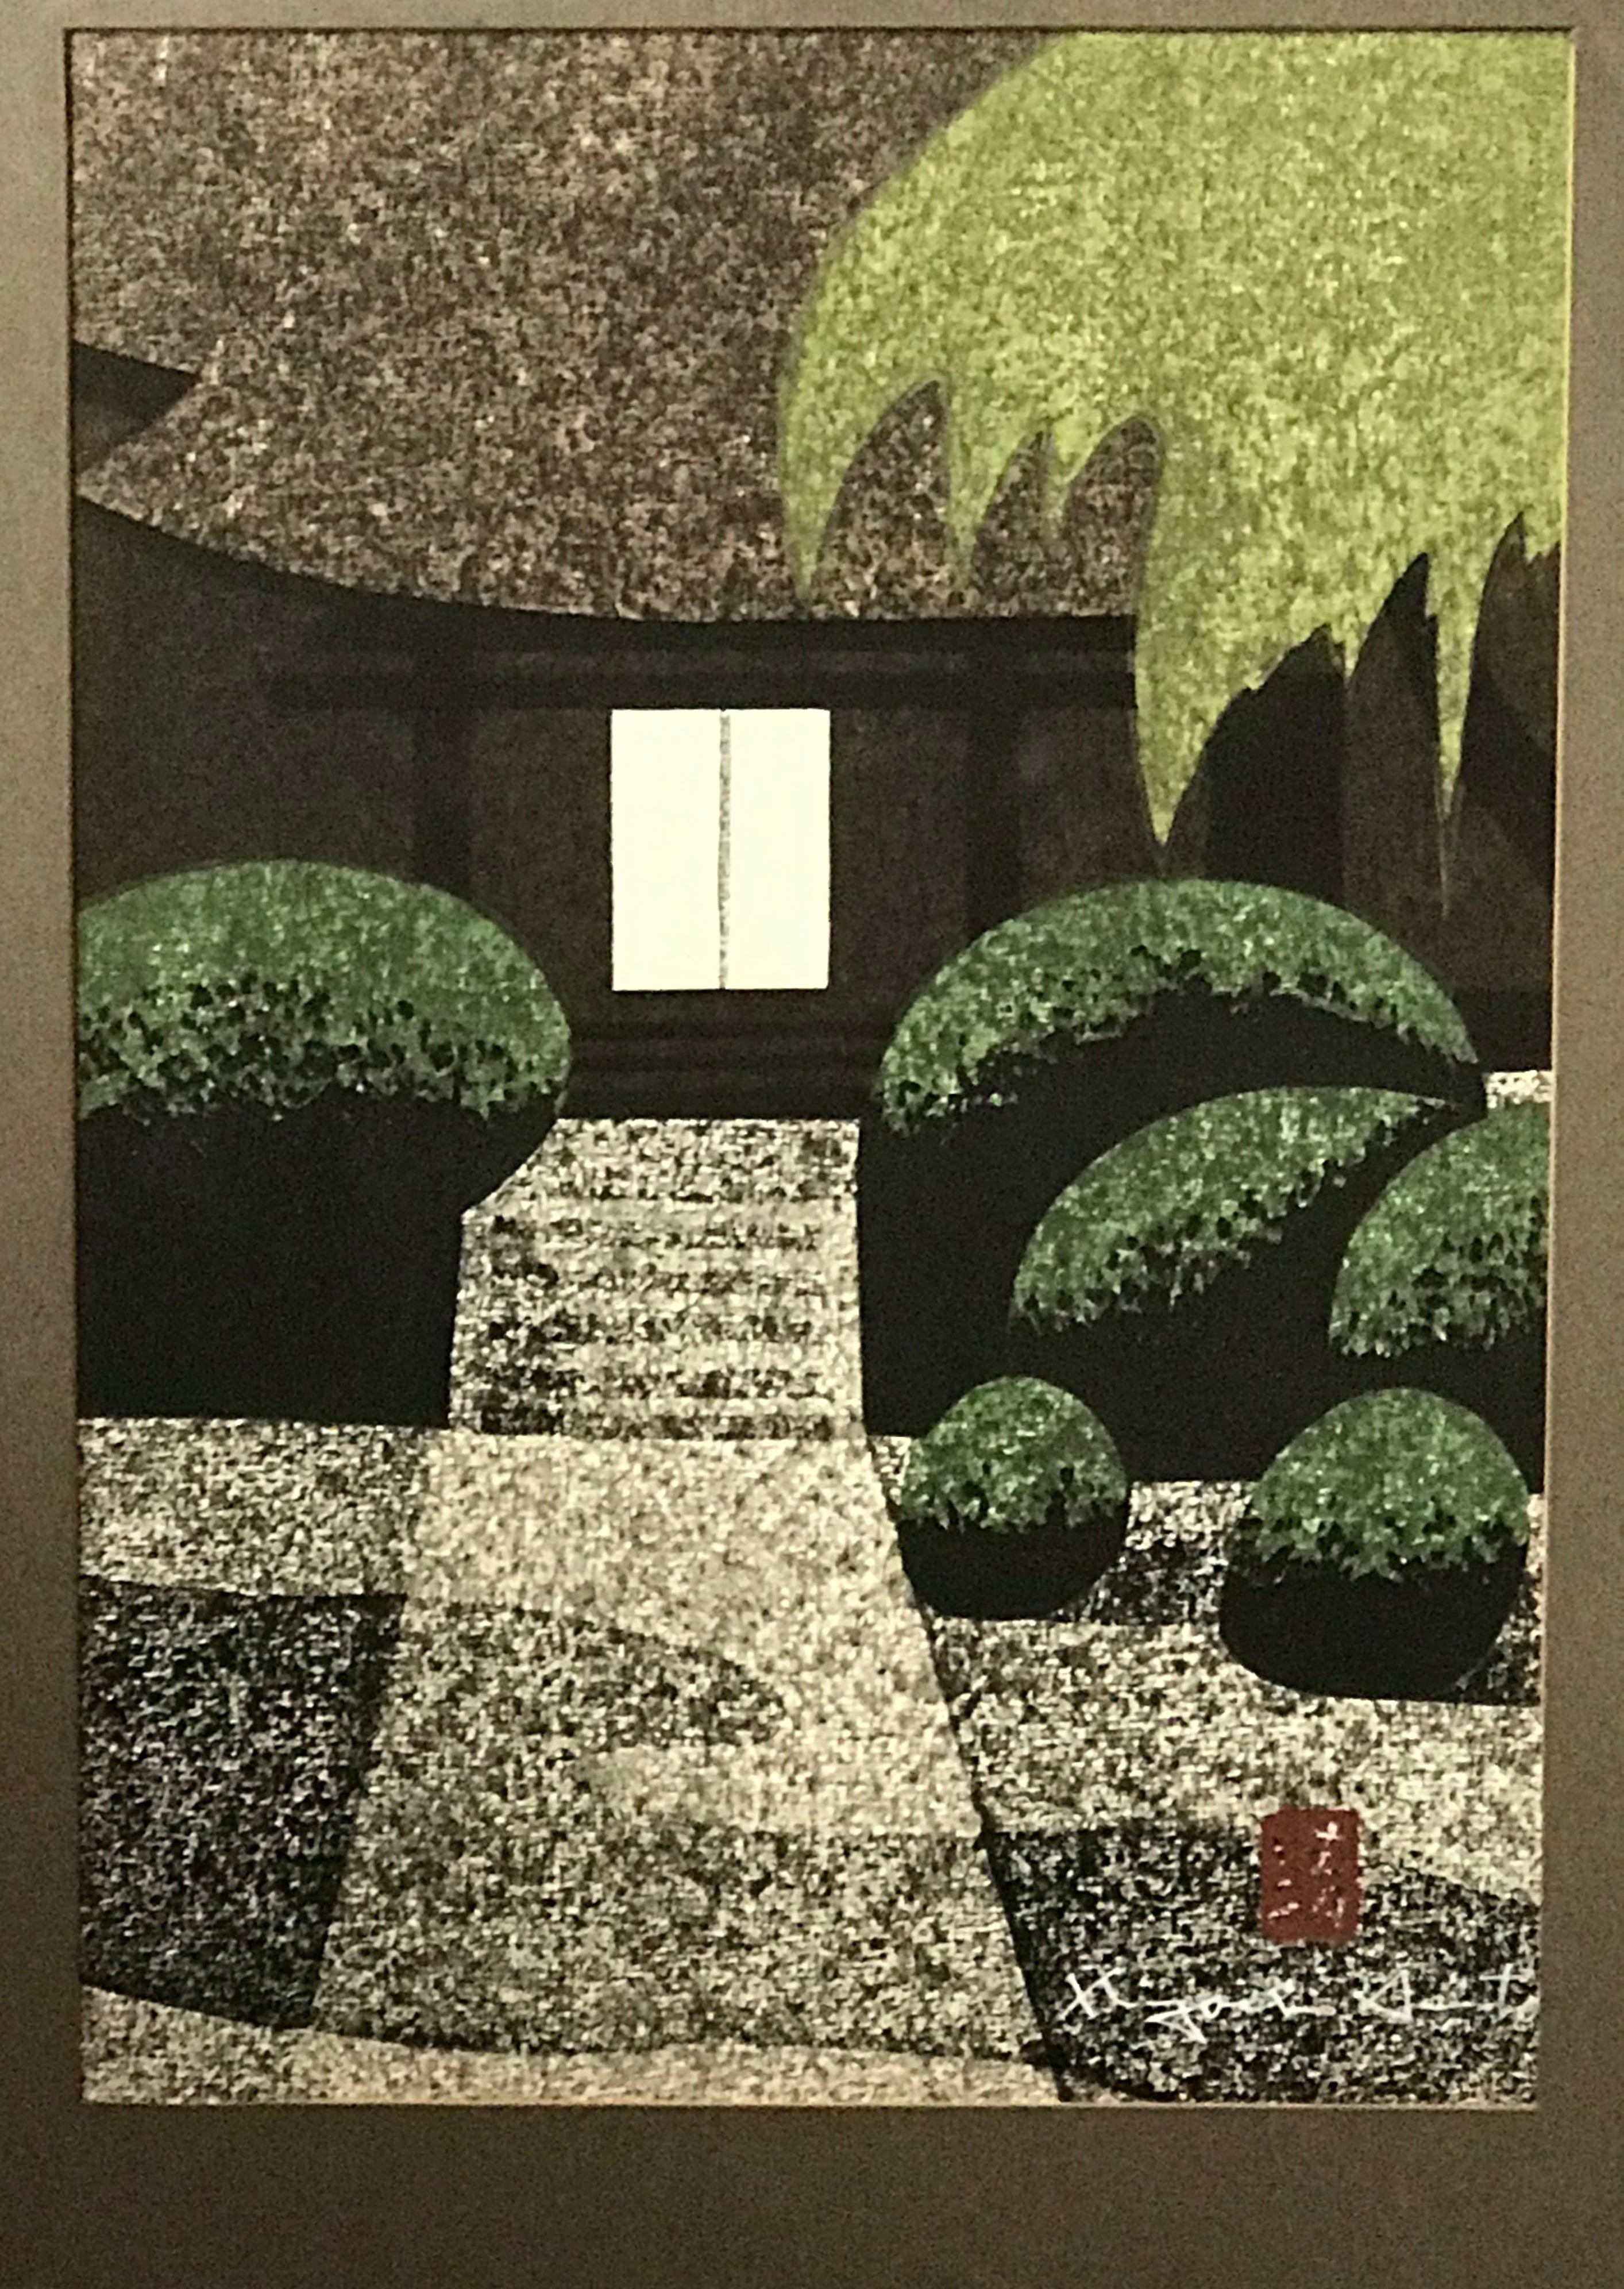  Kaminoyama Jokoji- Tempel von Kiyoshi Saito – limitierte Auflage – Print von Kiyoshi Saitō